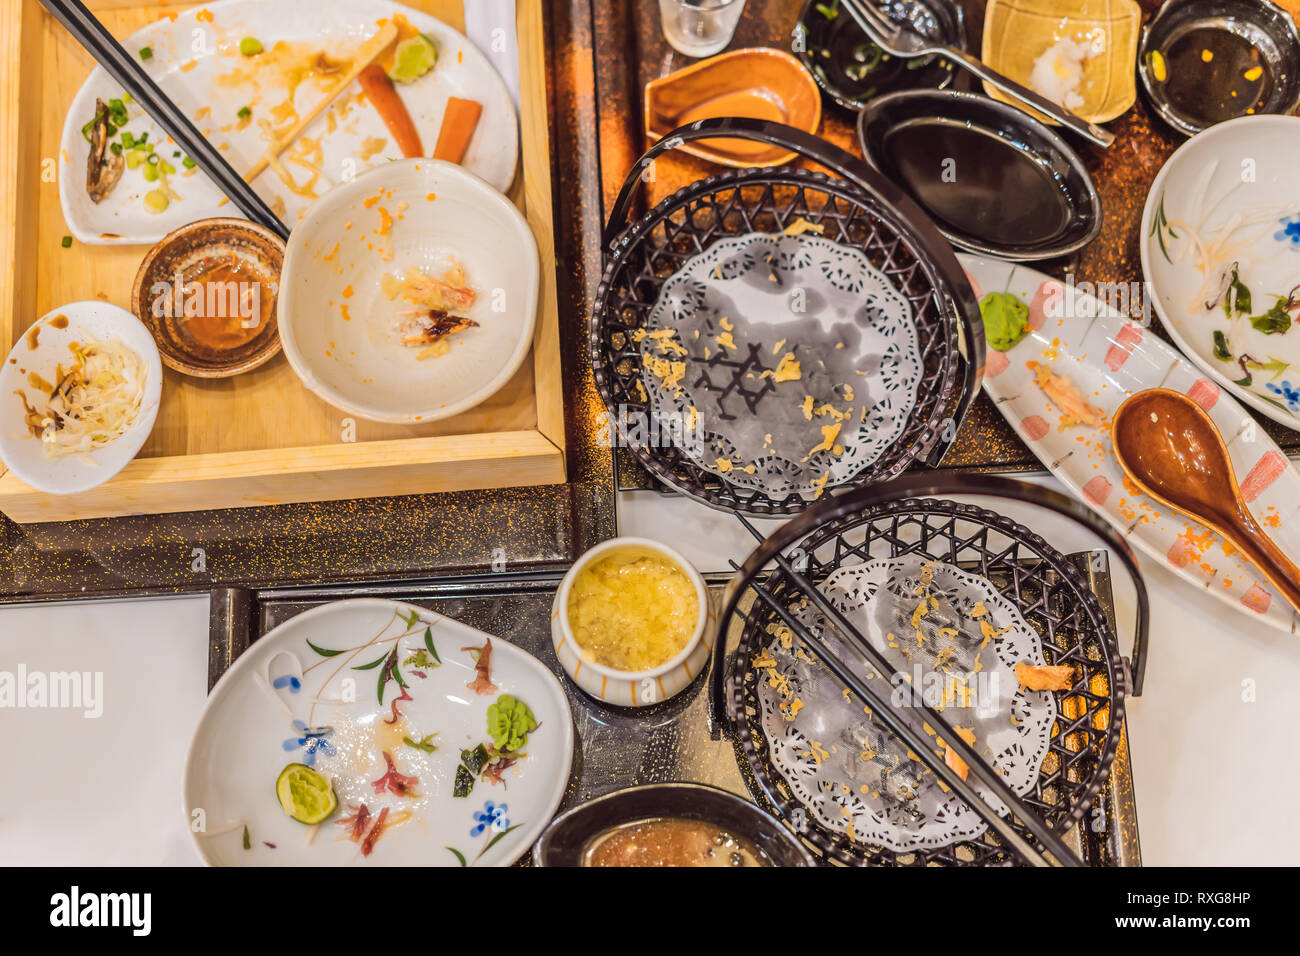 Unordentliche Tisch nach dem Essen in ein japanisches Restaurant. Dreckig,  fertig Essen, Reste Konzepte Stockfotografie - Alamy